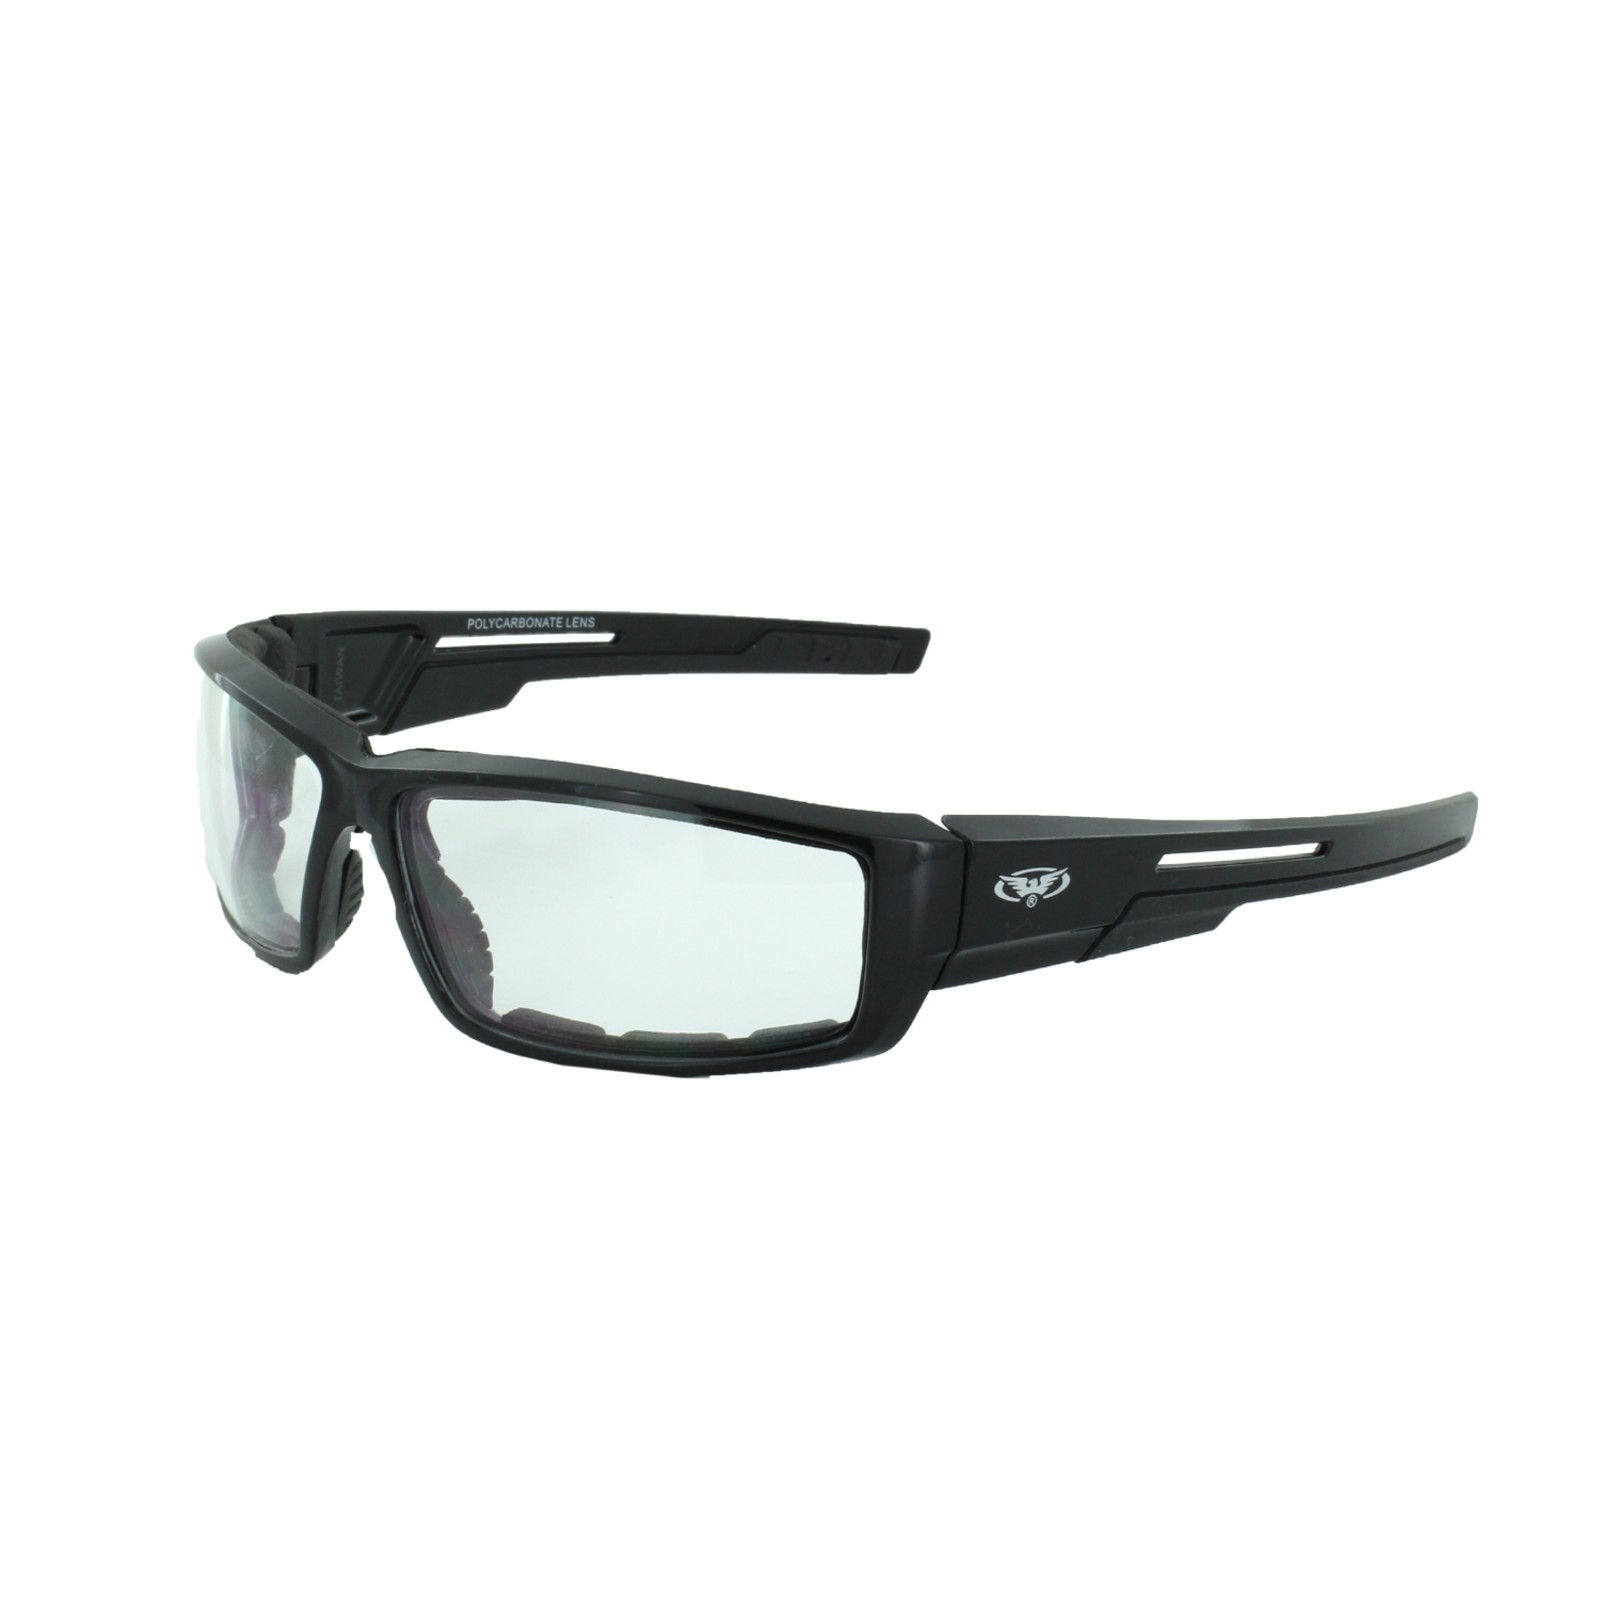 0,25 tot Accessoires Zonnebrillen & Eyewear Leesbrillen 3,50 bruin zwart wit hd1013 052 Harley Davidson Leesbril van 